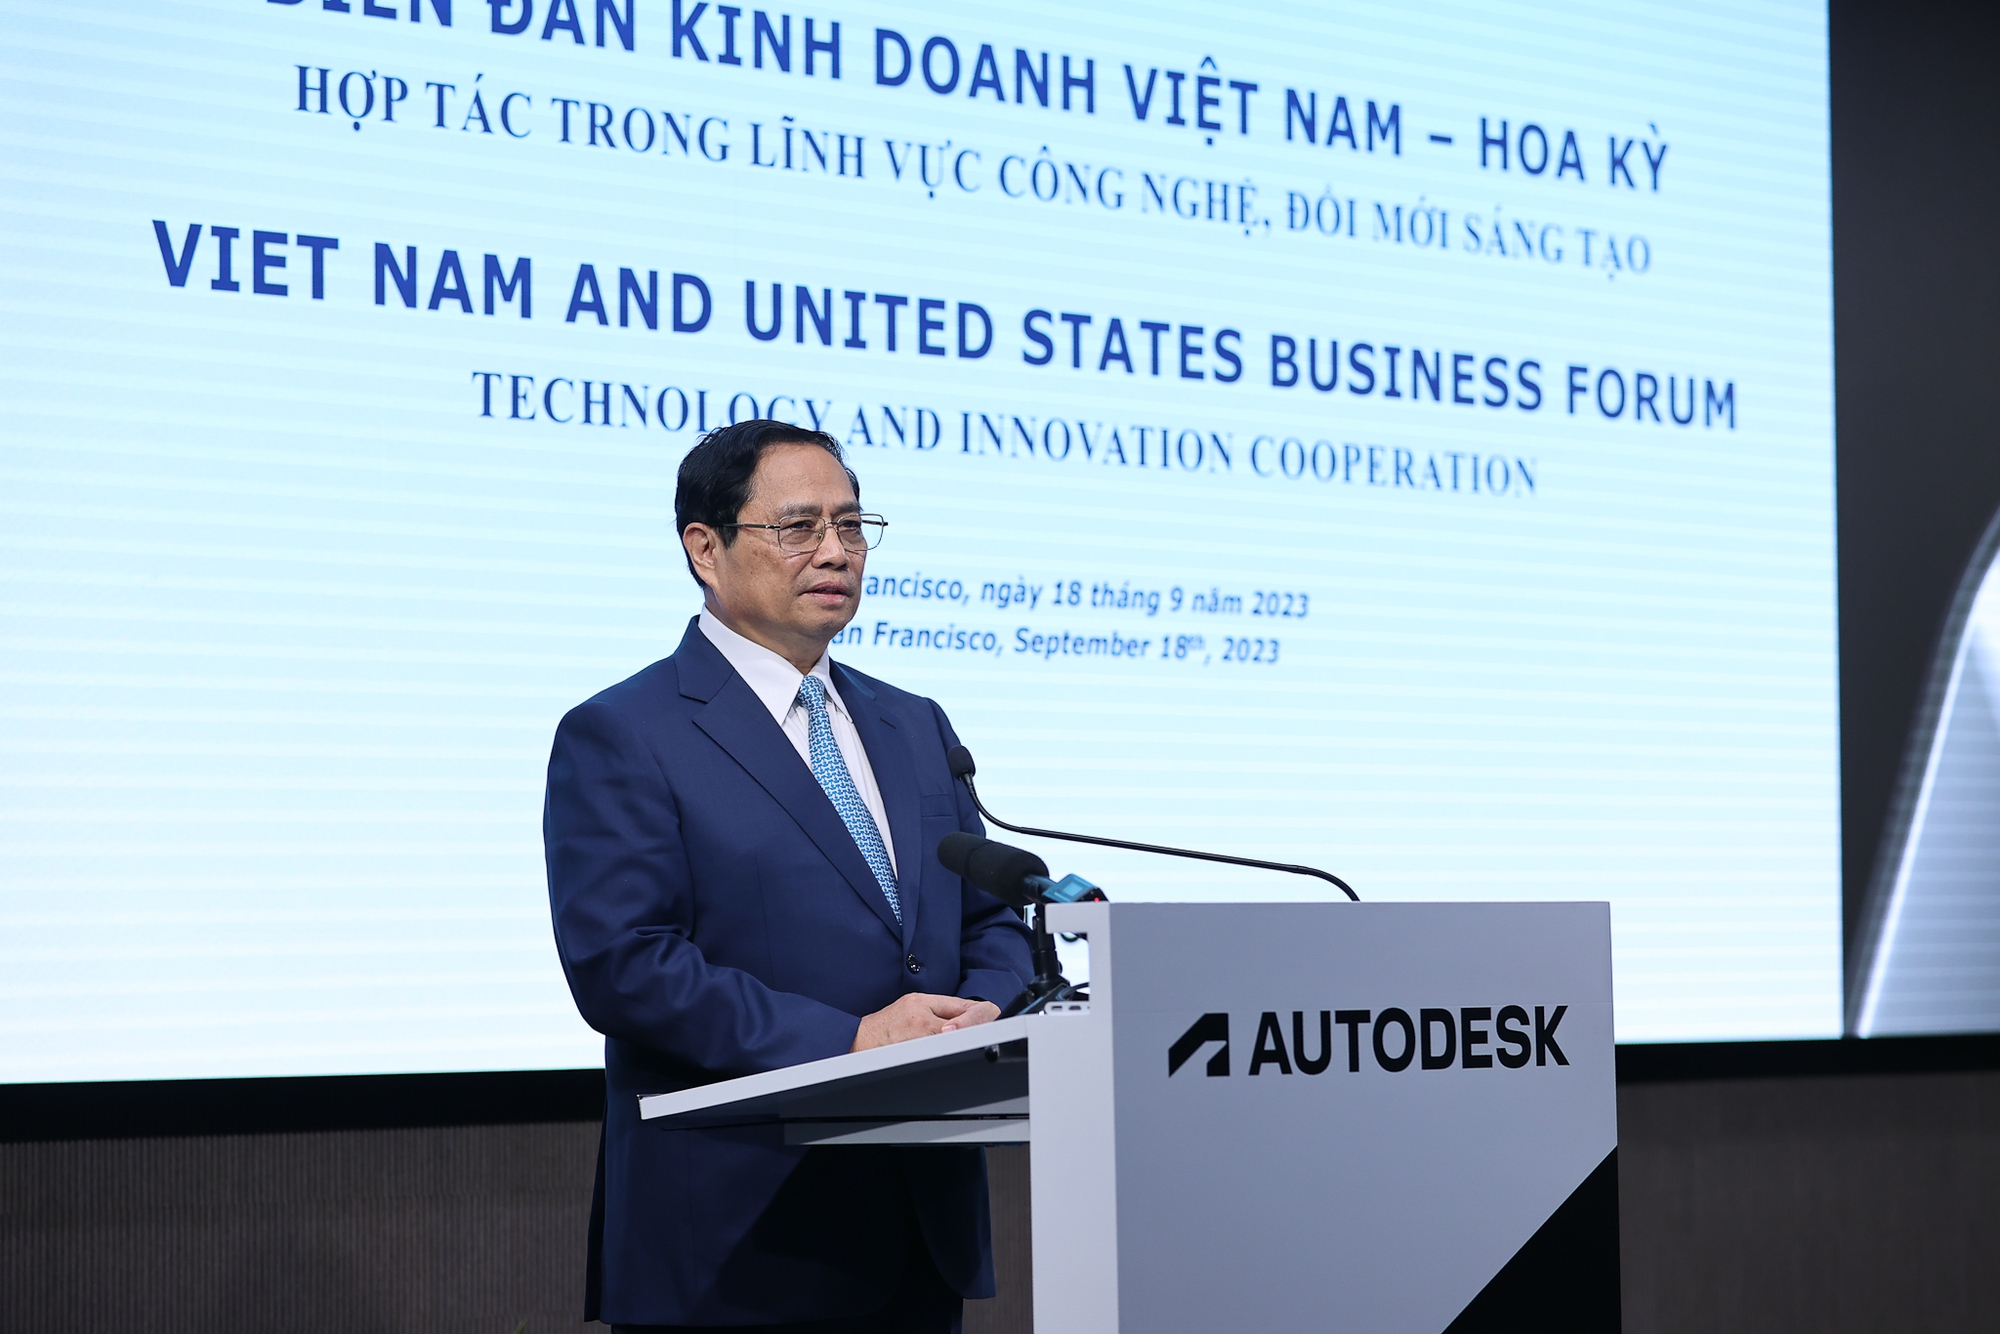 Bước ngoặt mạnh mẽ và tích cực để doanh nghiệp Việt Nam - Hoa Kỳ hợp tác đầu tư - Ảnh 2.